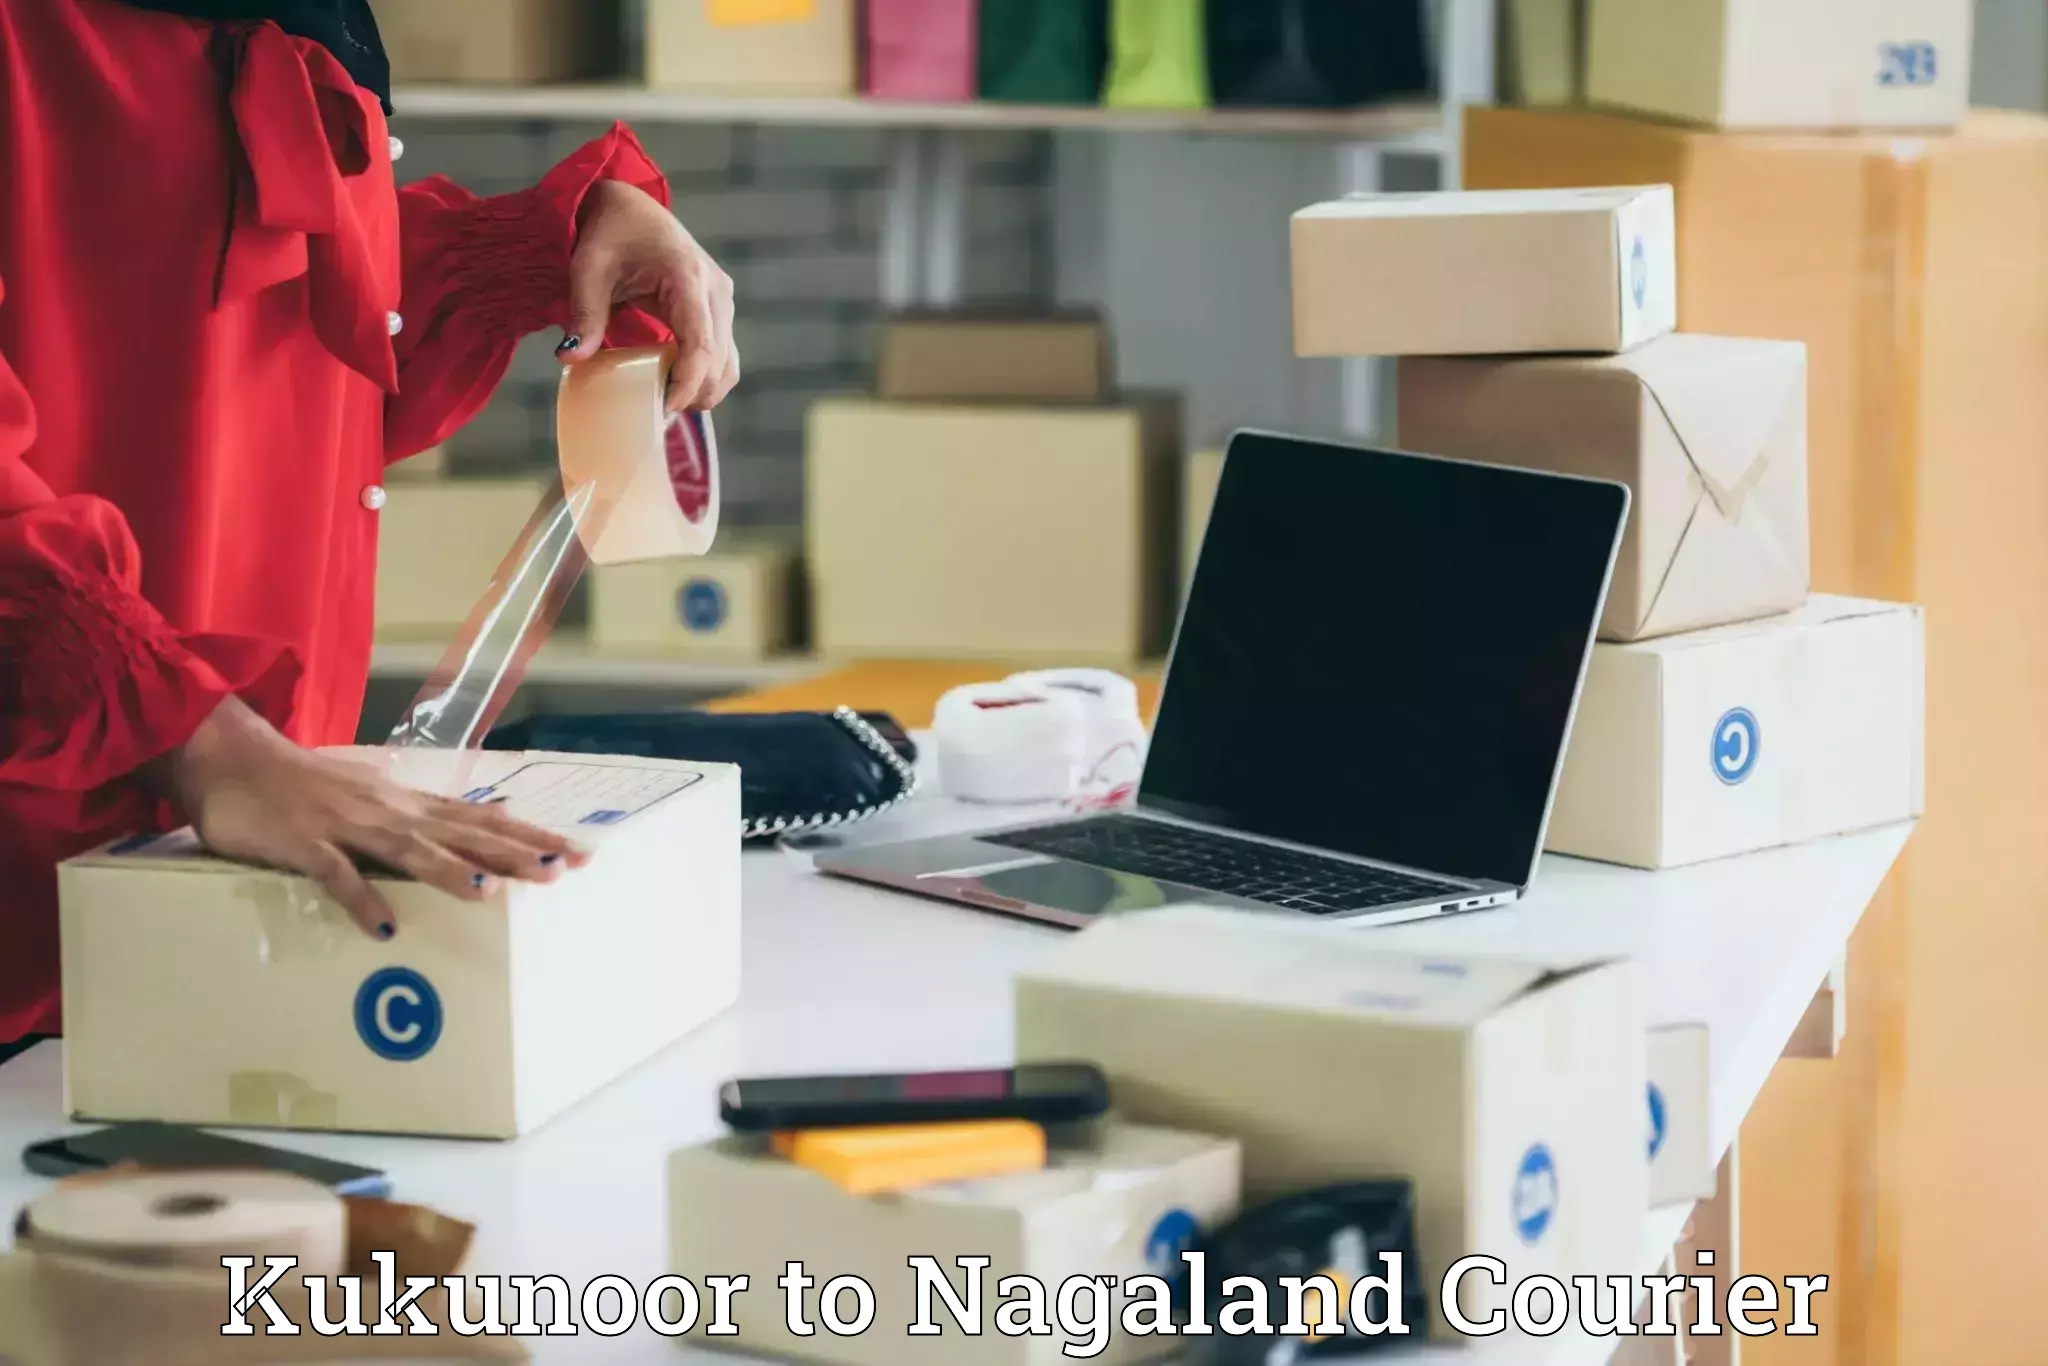 Doorstep delivery service Kukunoor to Nagaland